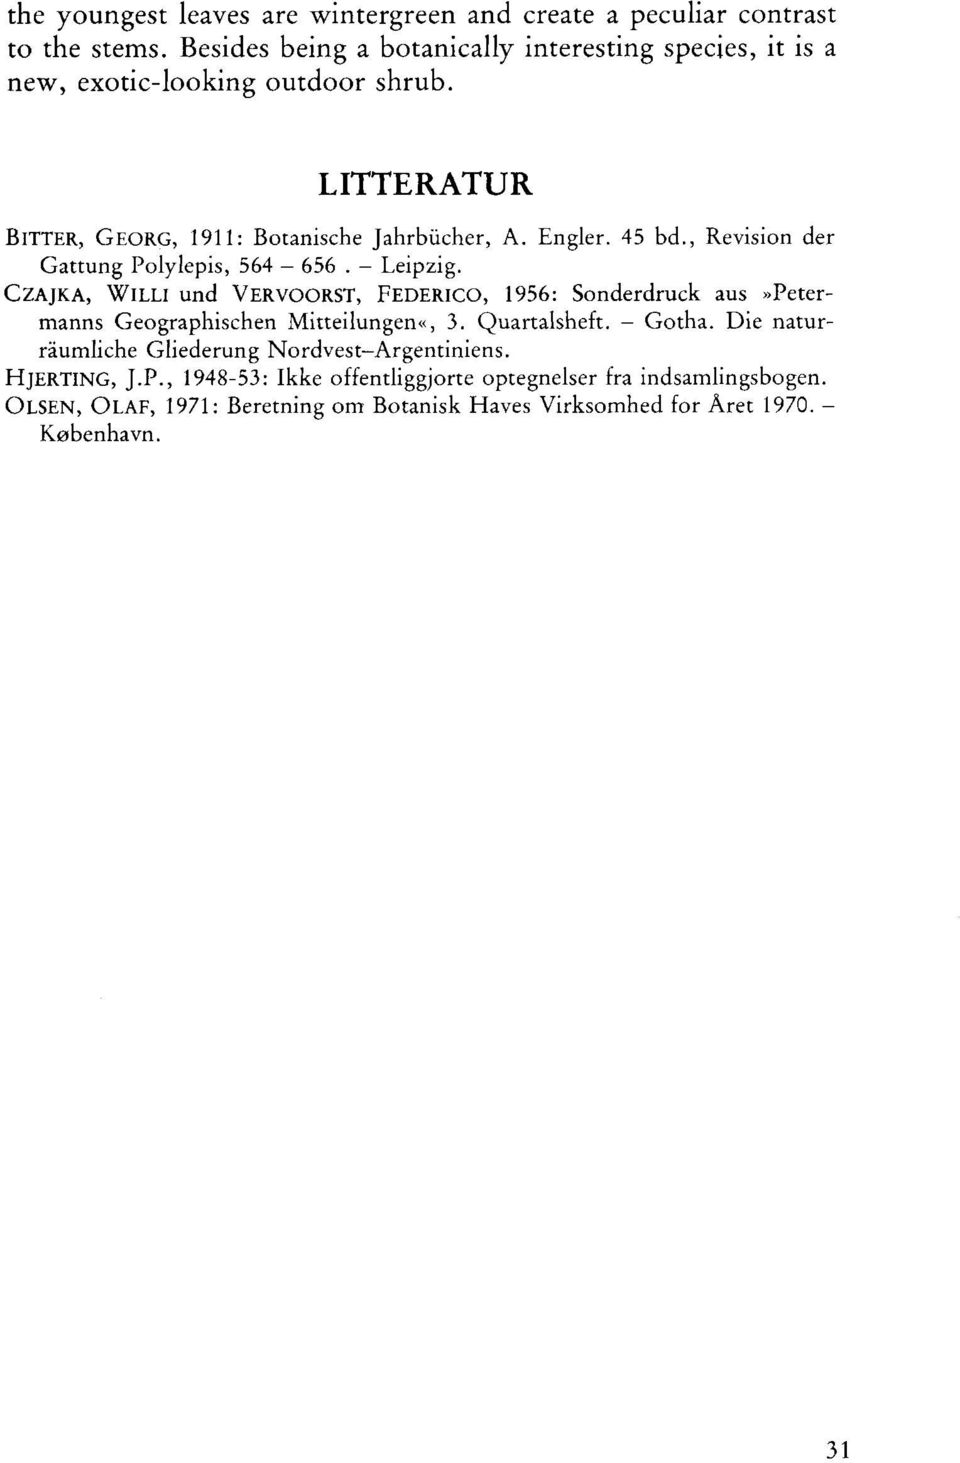 45 bd., Revision der Gattung Polylepis, 564-656. - Leipzig.